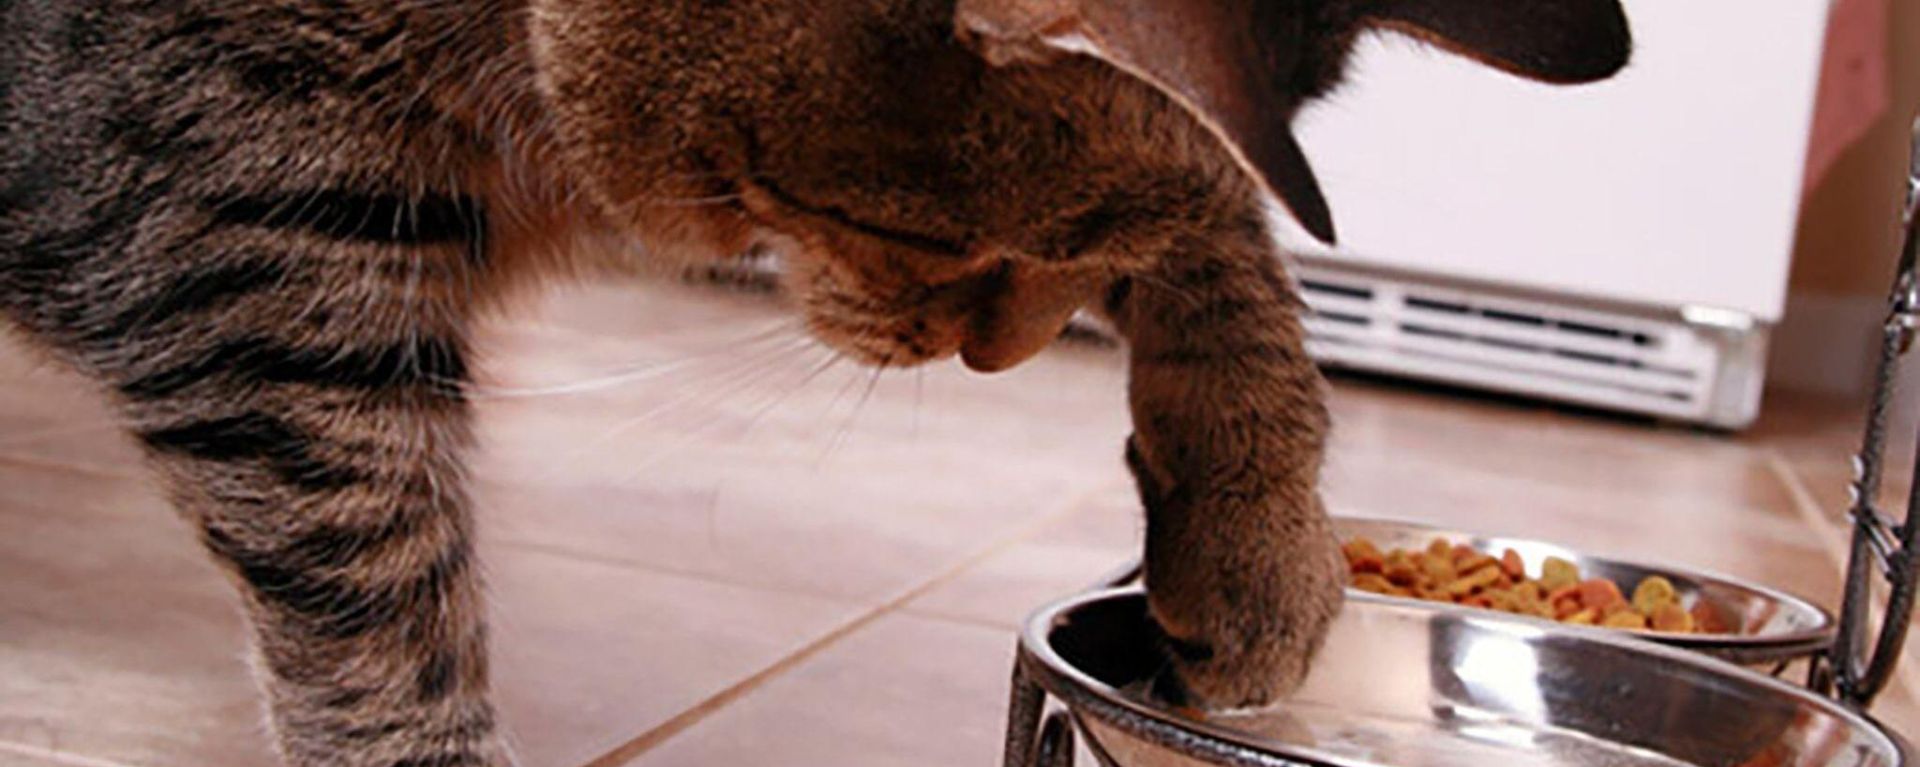 Кошка закапывает миску с едой - что это значит и как отучить?